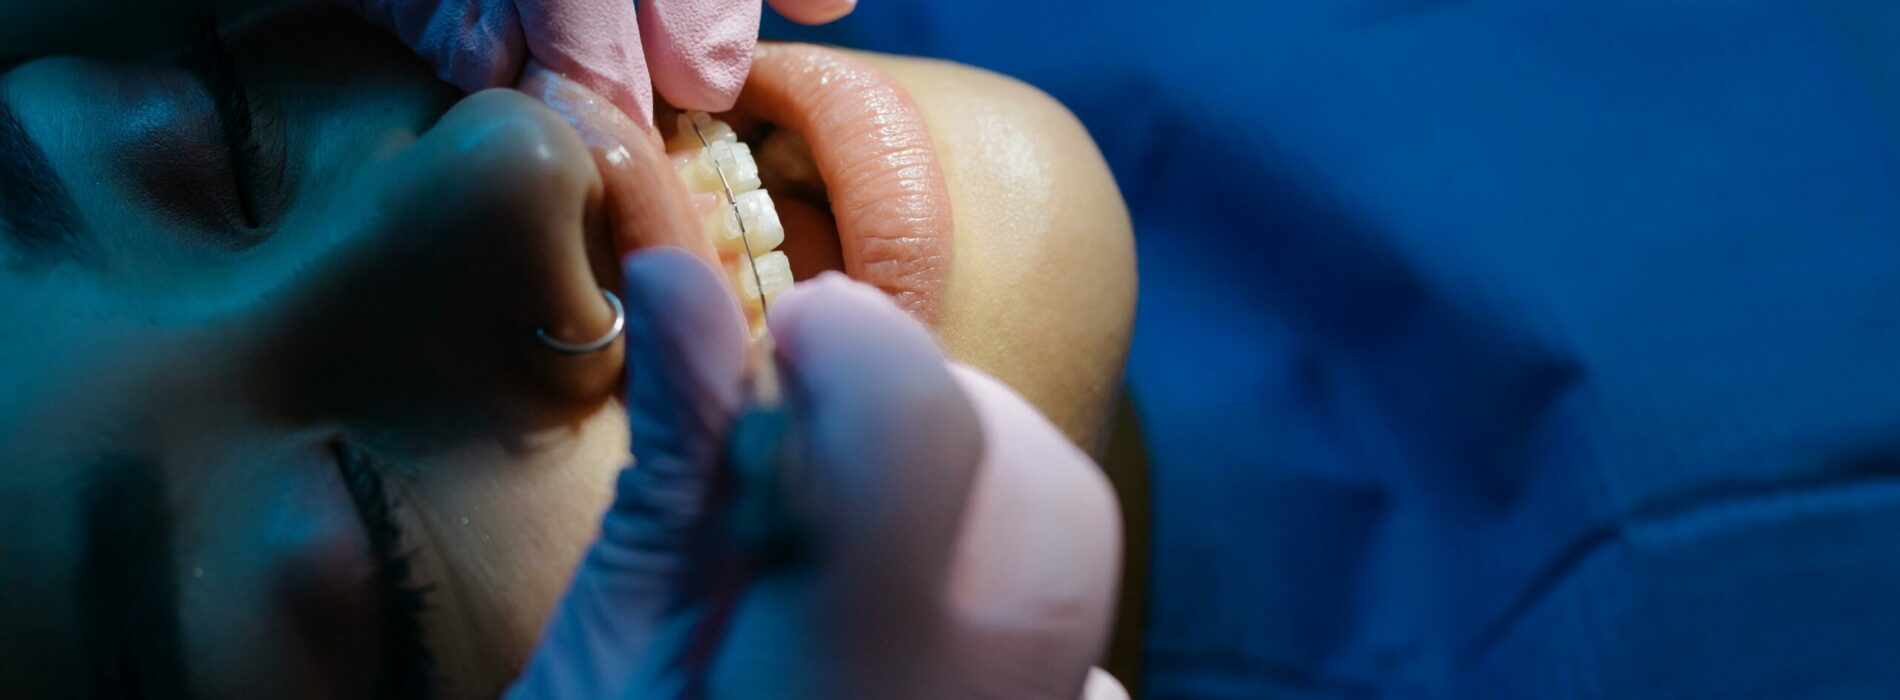 Aparat na jednego zęba – czy się da?